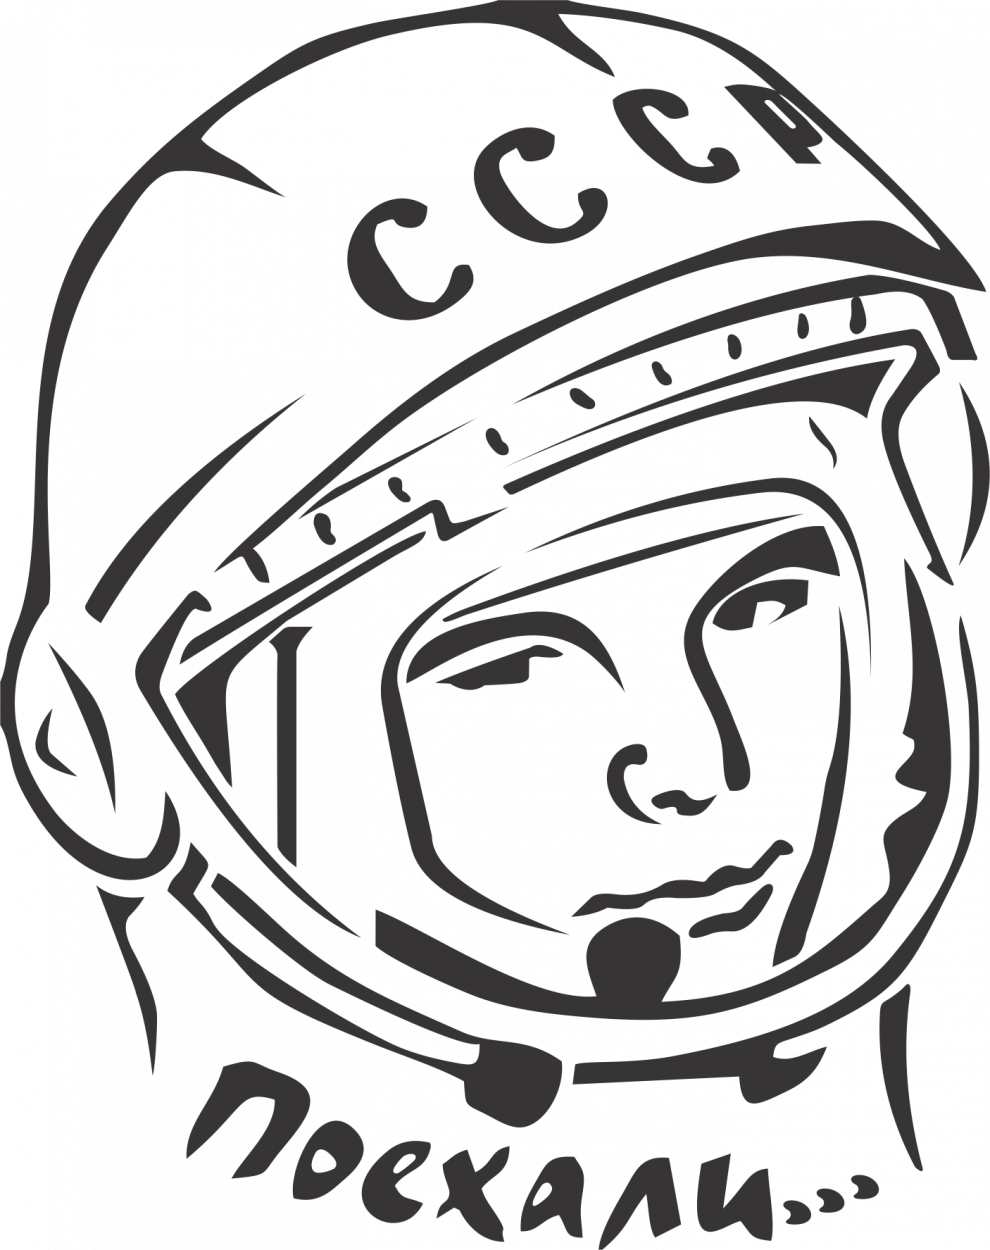 Гагарин портрет. Портрет Юрия Гагарина карандашом. Шаблон шлема космонавта для фотосессии